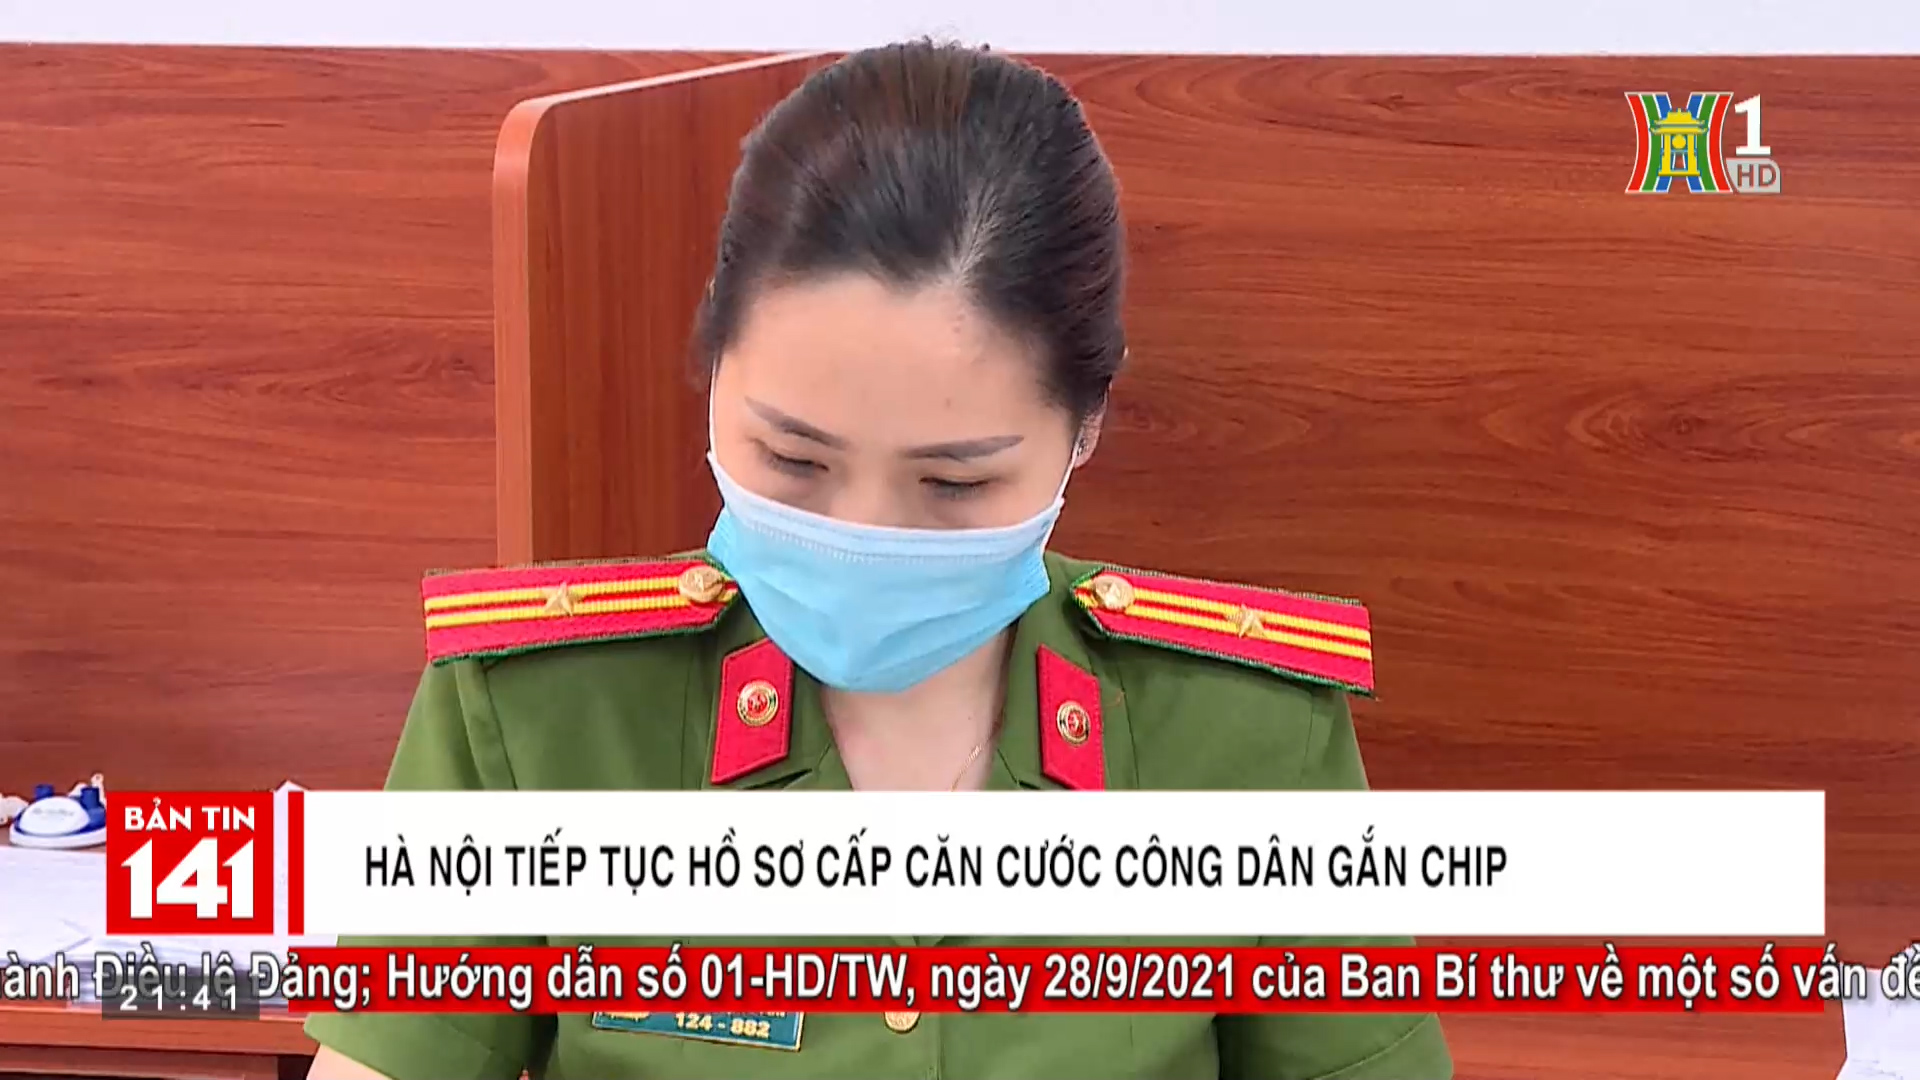 Hà Nội tiếp tục hồ sơ cấp căn cước công dân gắn chip